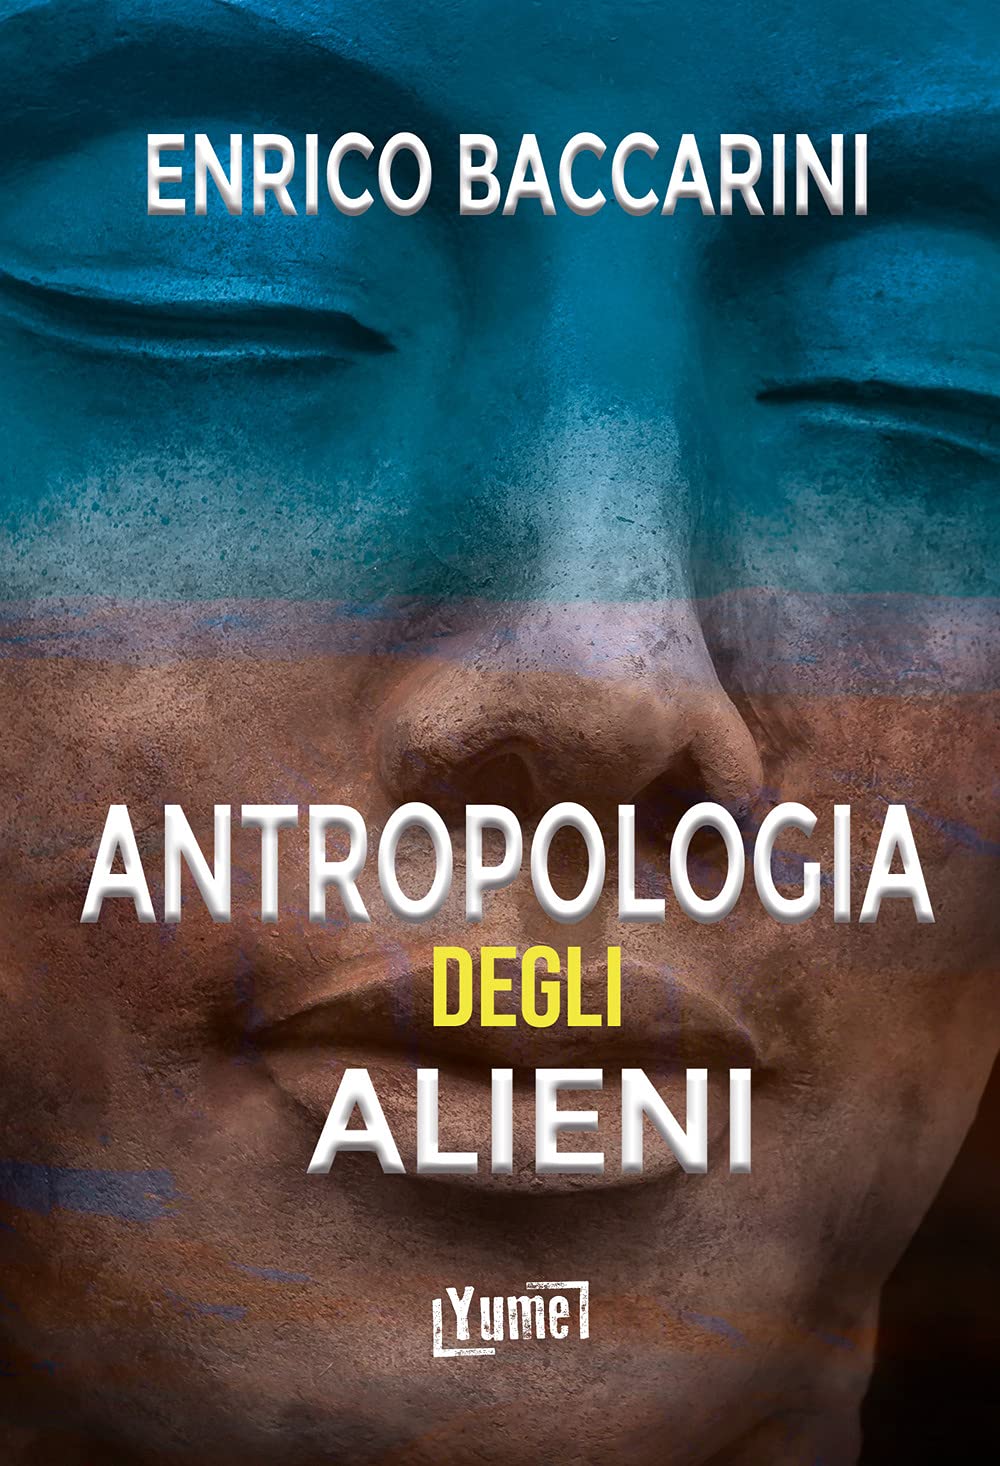 world ufo day - antropologia degli alieni